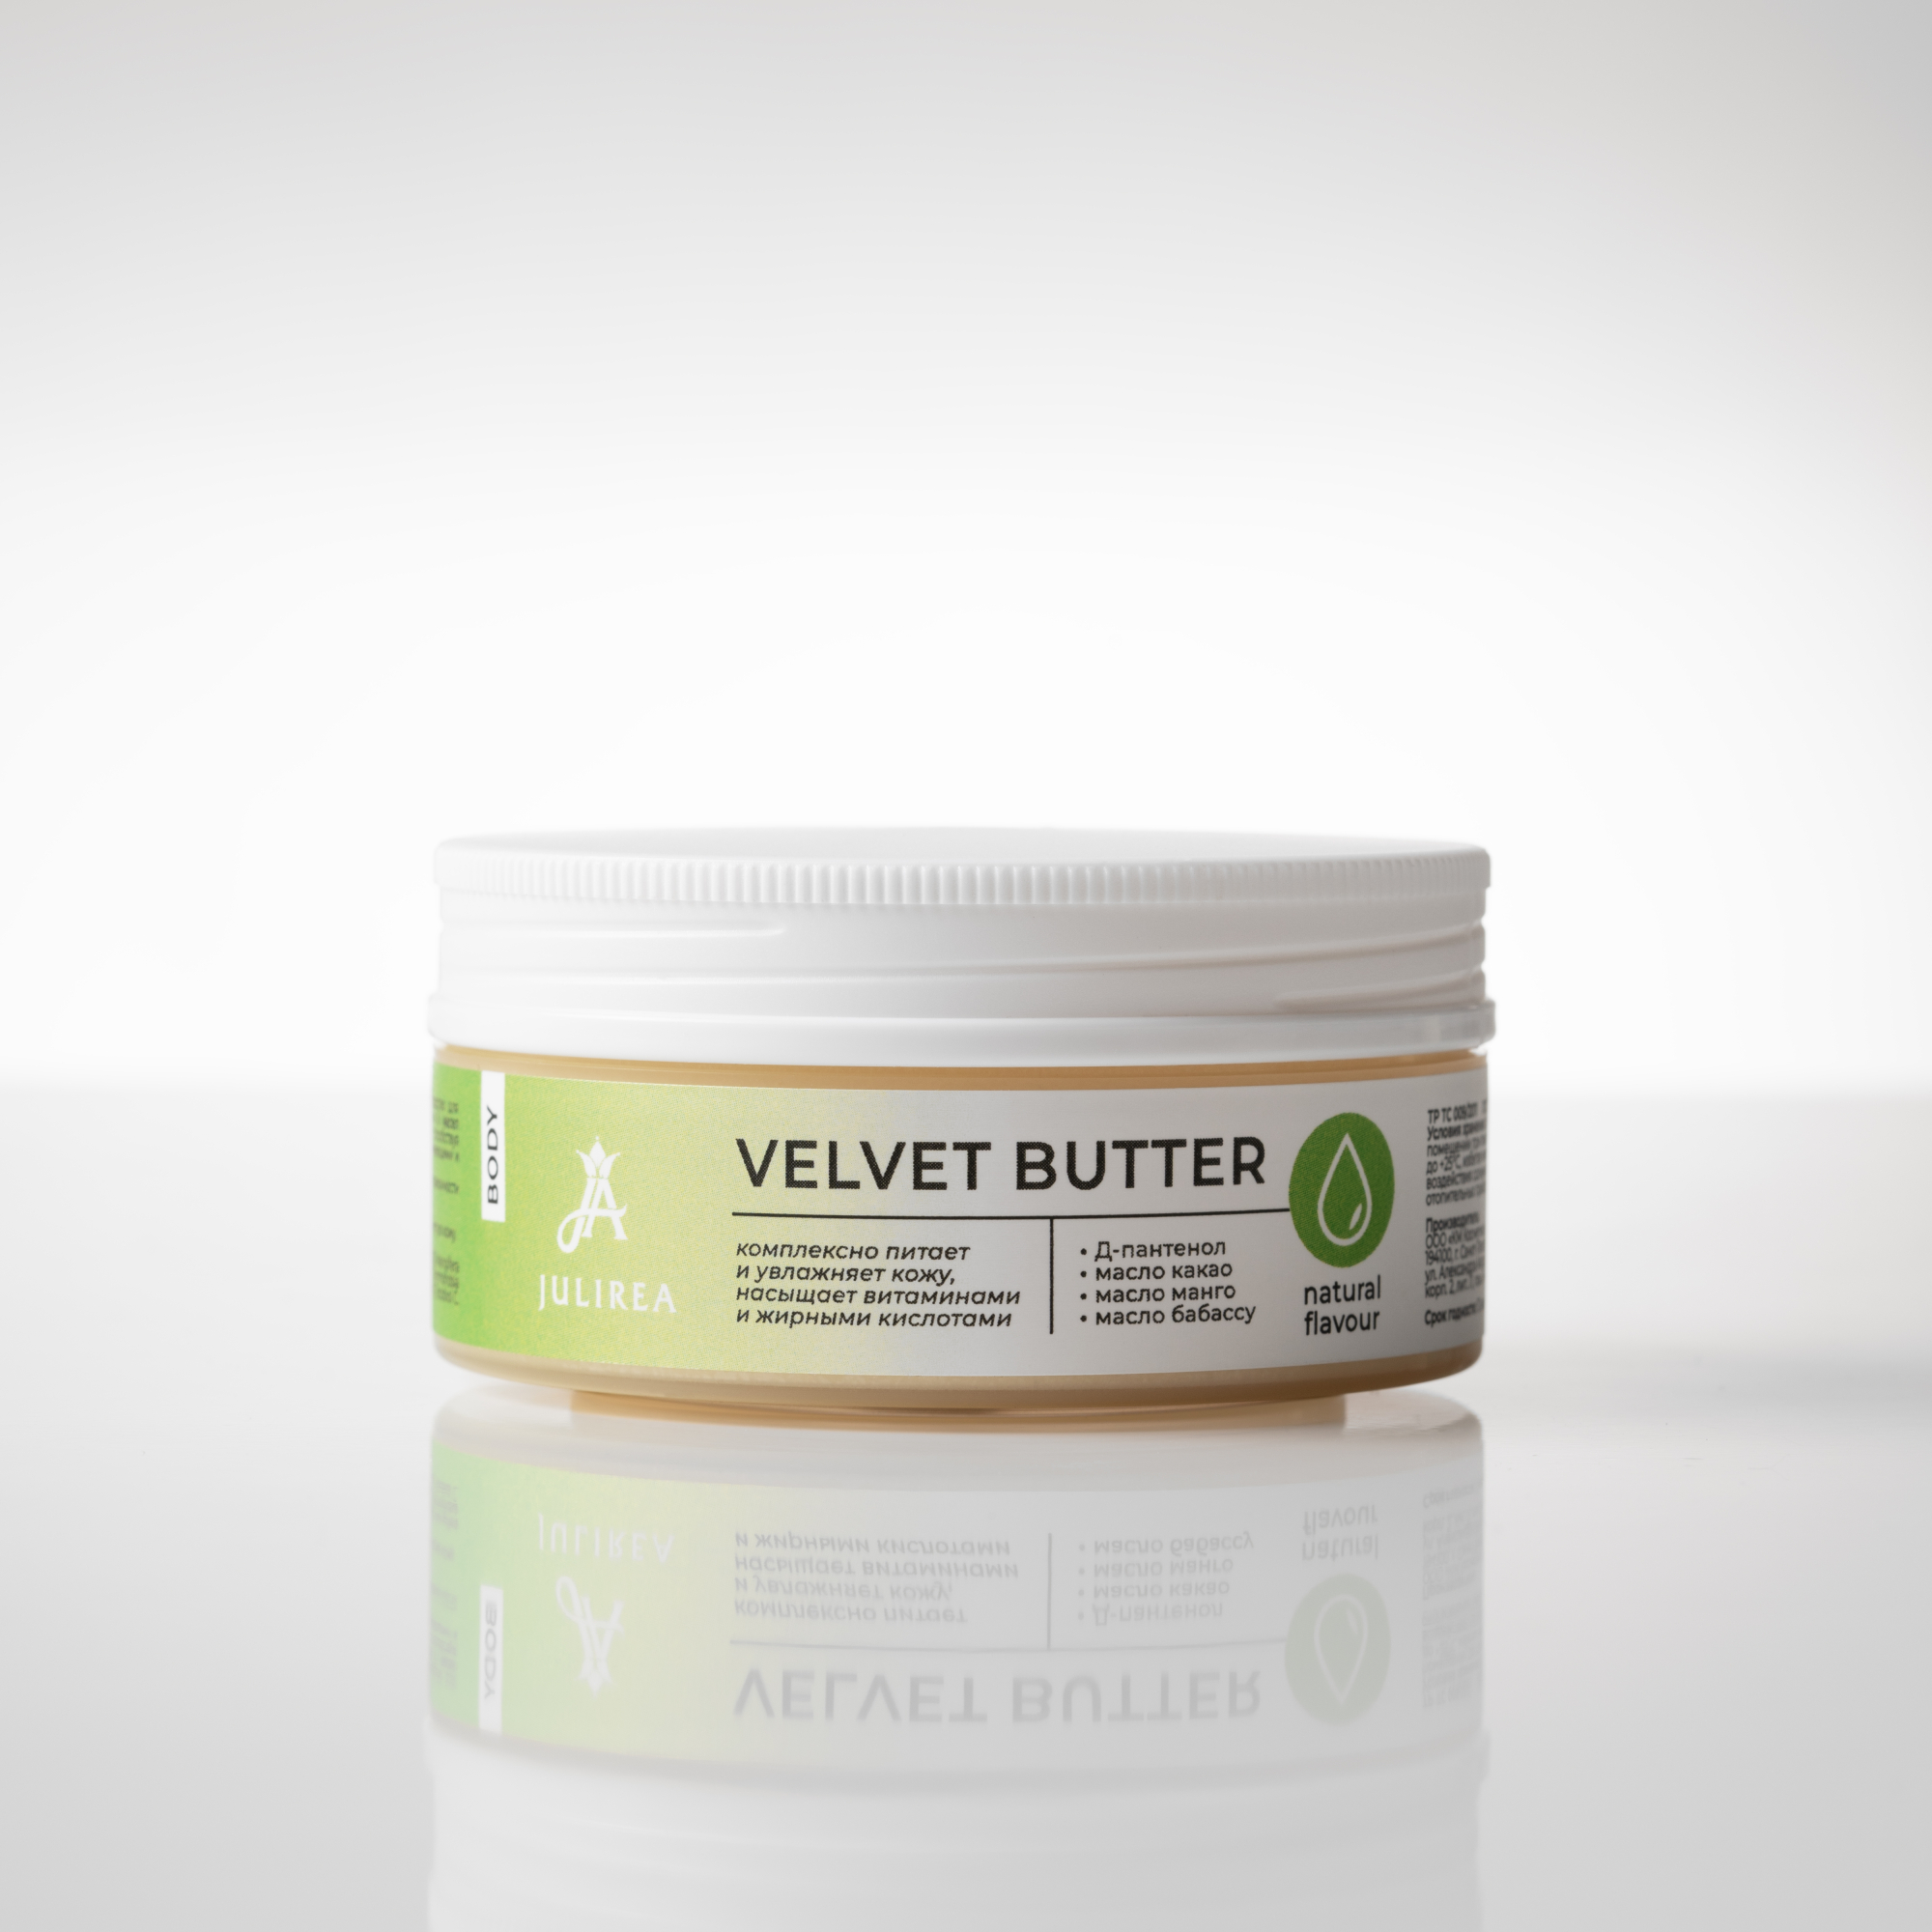 Масло для тела Velvet Butter Julirea, 50 г (натуральный) купить в онлайн экомаркете